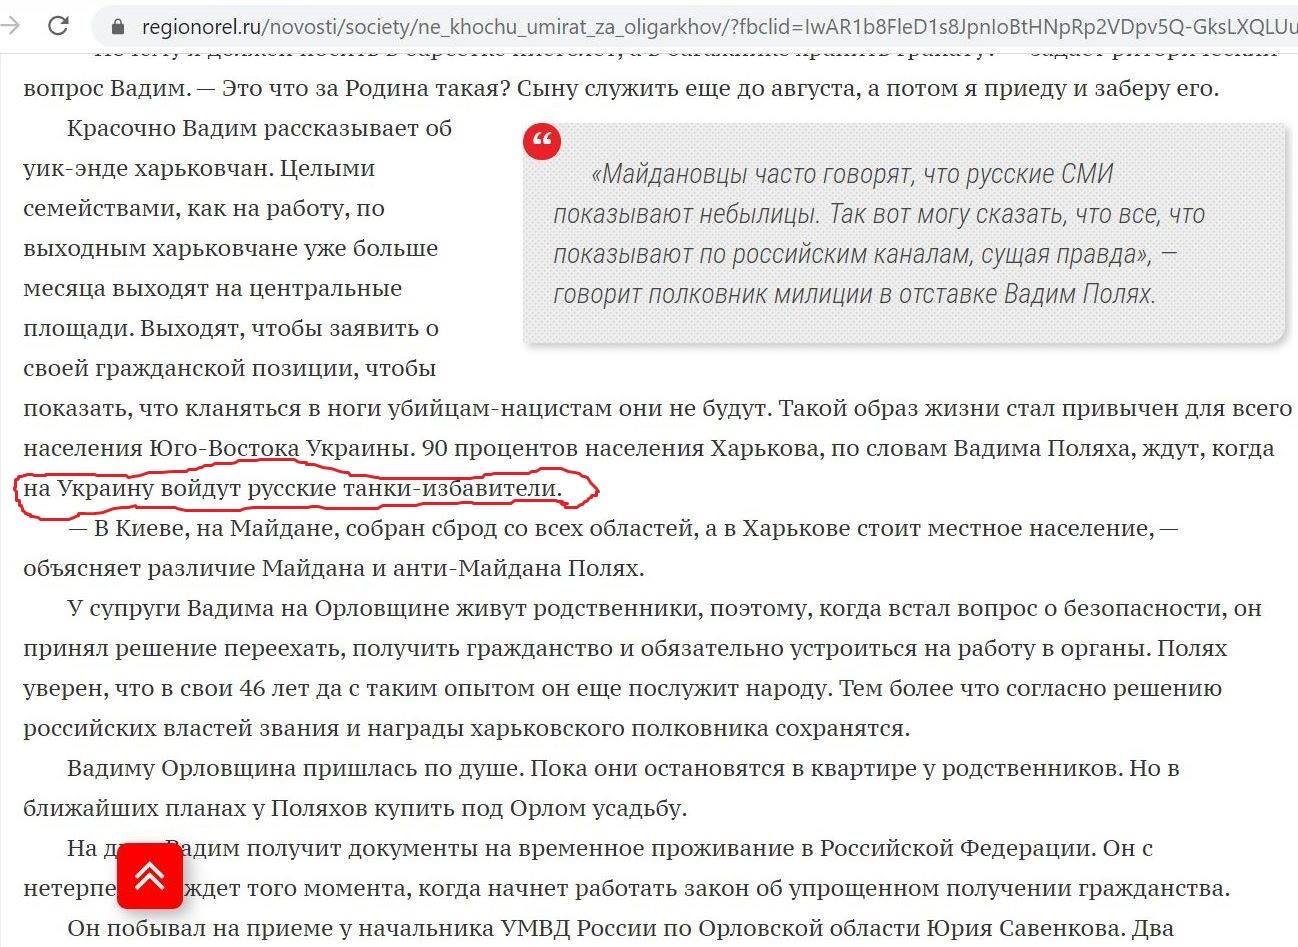 https://img.glavnoe.ua/Image2018/2020/05/29/0003.jpg